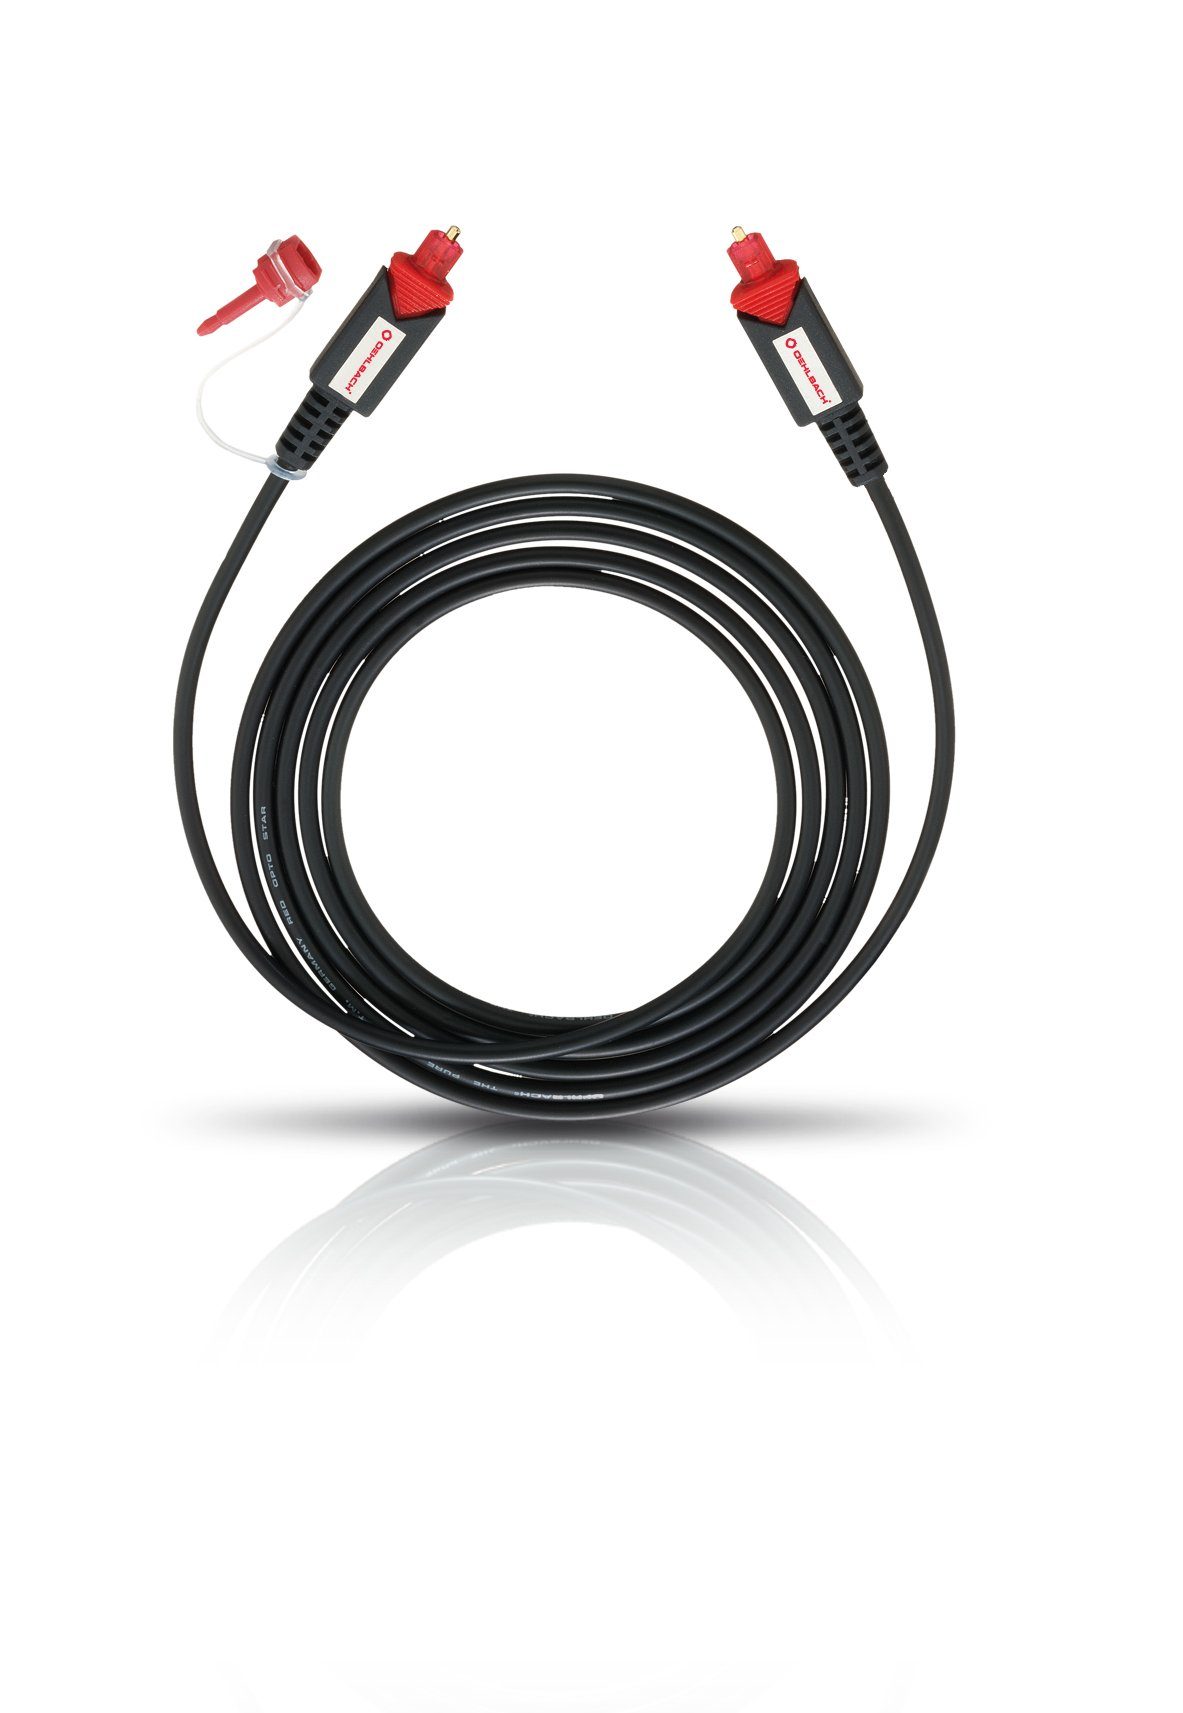 4 m Hochwertiges & Flexibles optisches Toslink Digitalkabel mit 3,5 mm LWL-Klinken Adapter Oehlbach Red Opto Star 400 schwarz 